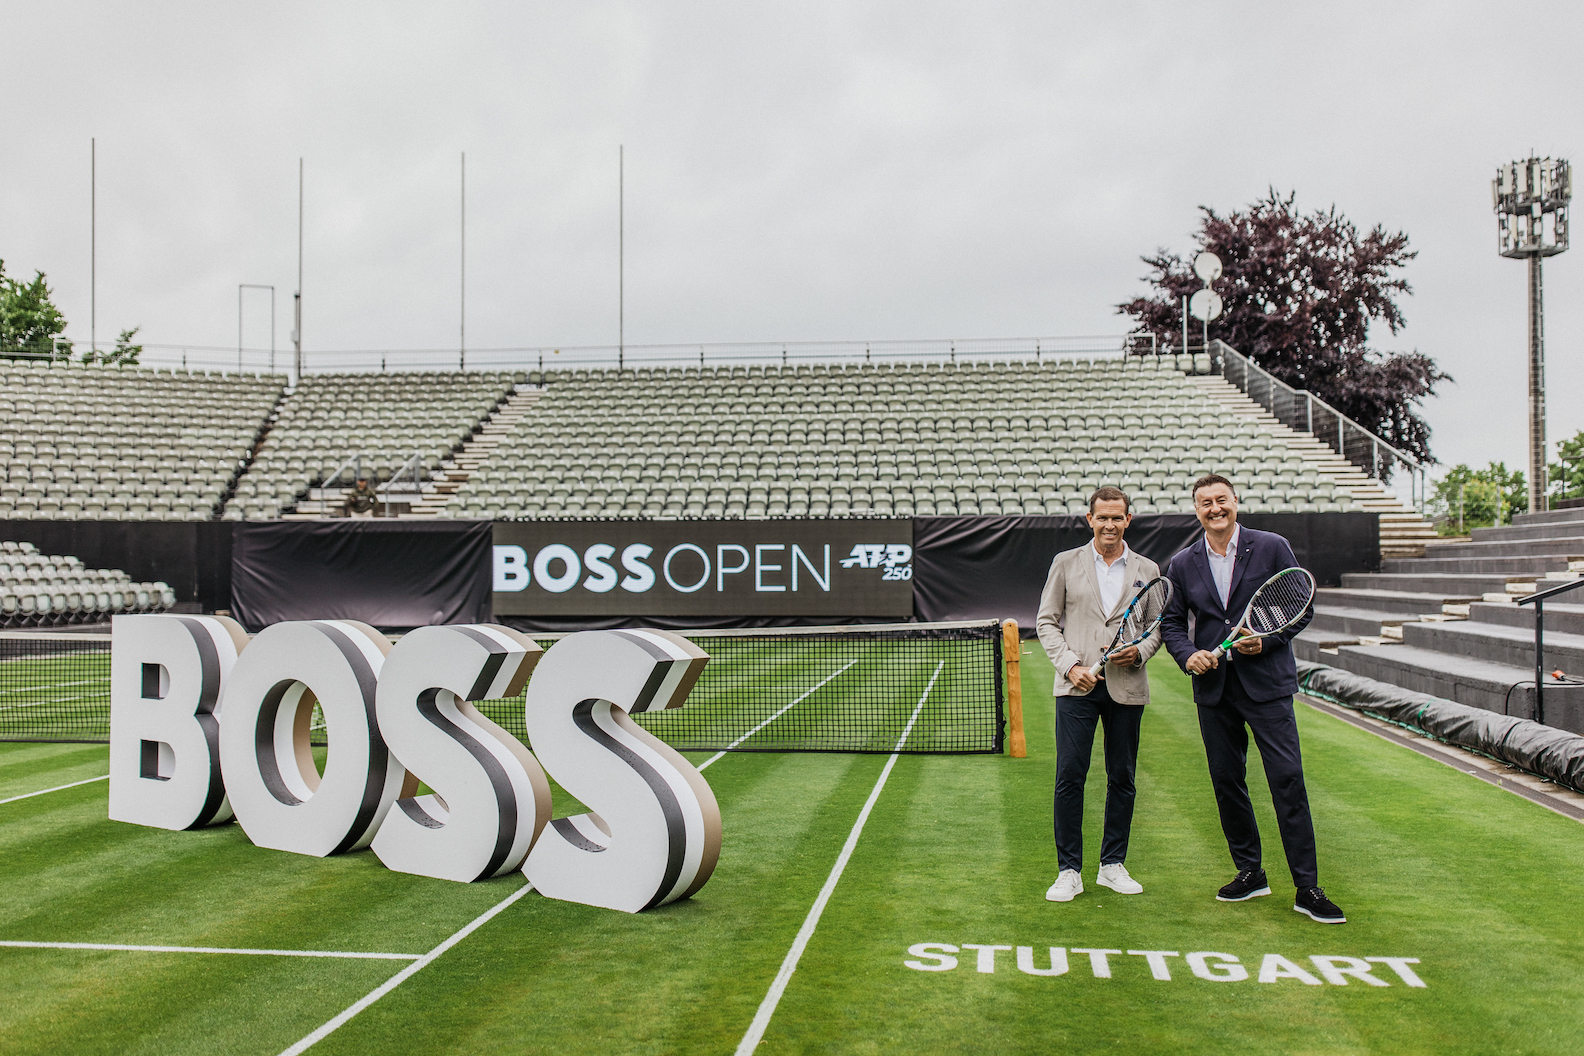 Aufschlag in die Zukunft! Das Tennis-Highlight am Stuttgarter Weissenhof heißt ab sofort BOSS OPEN